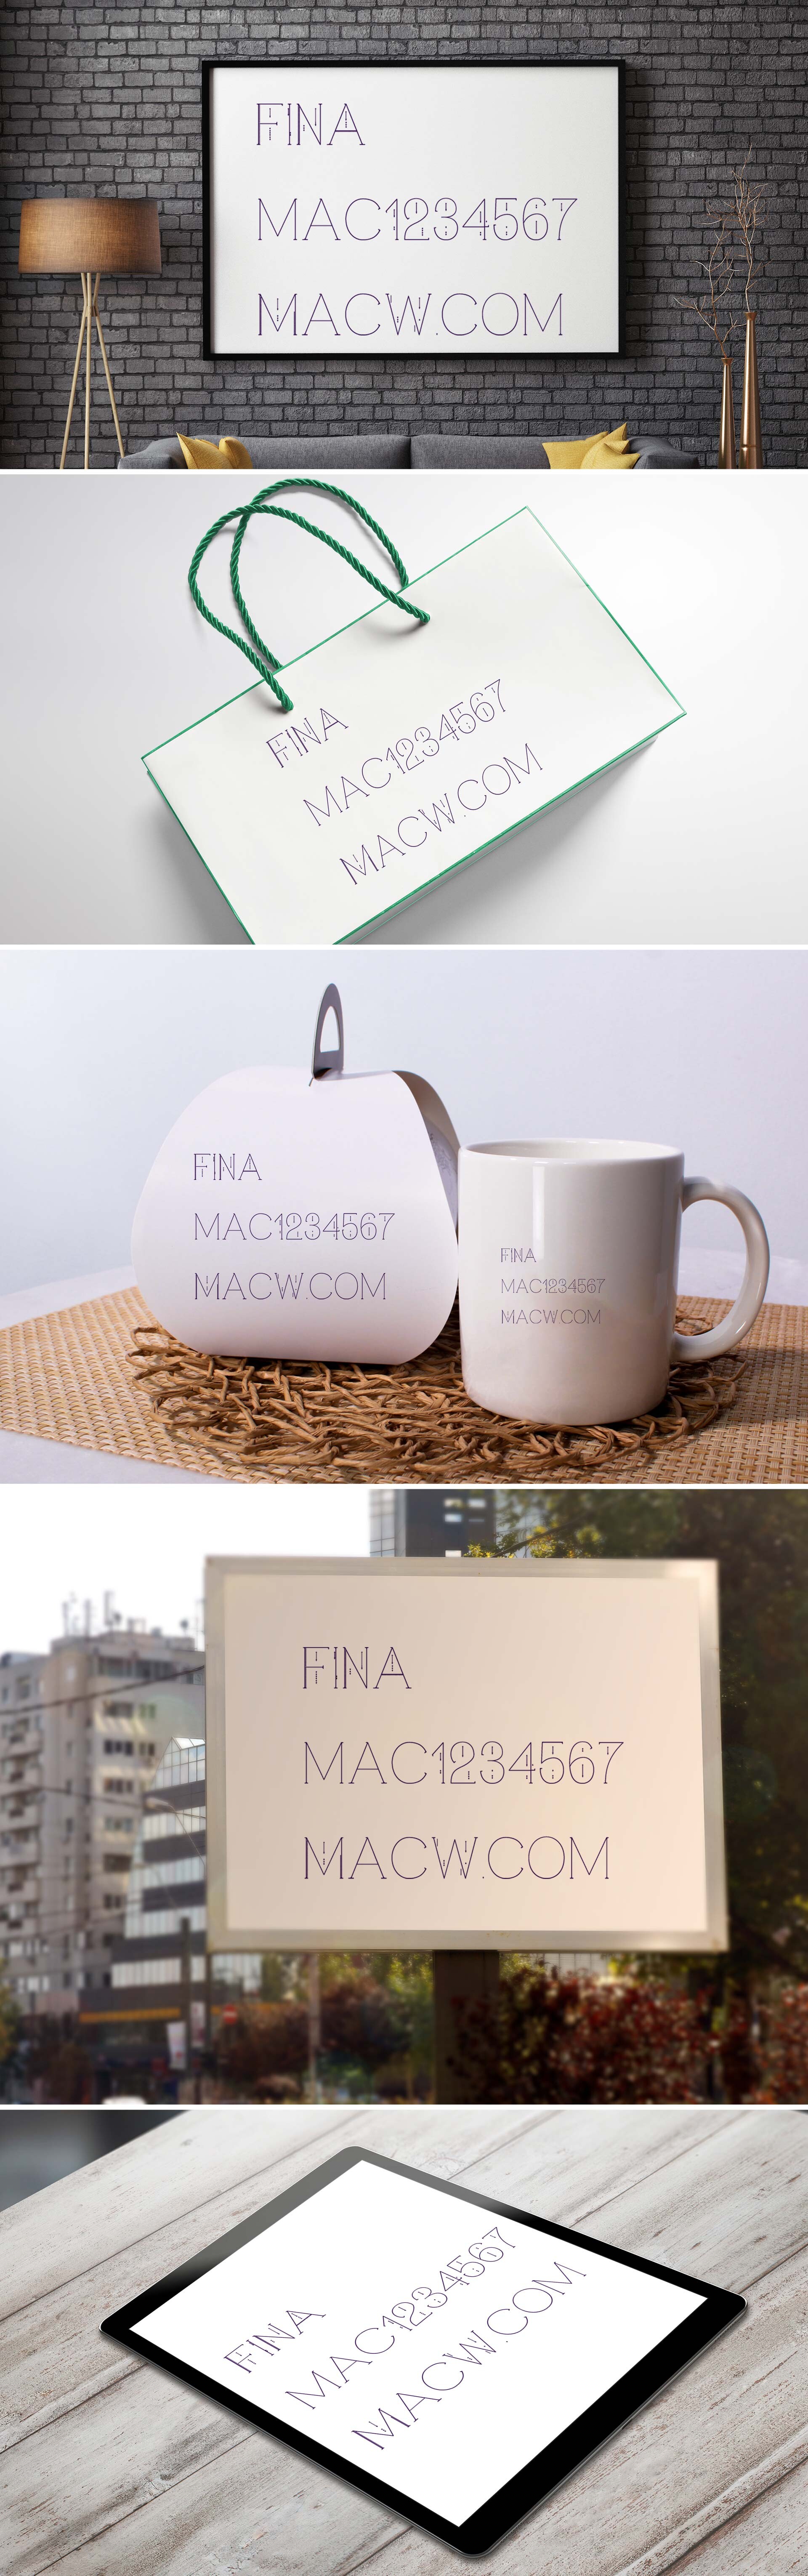 FINA现代简洁无衬线英文字体